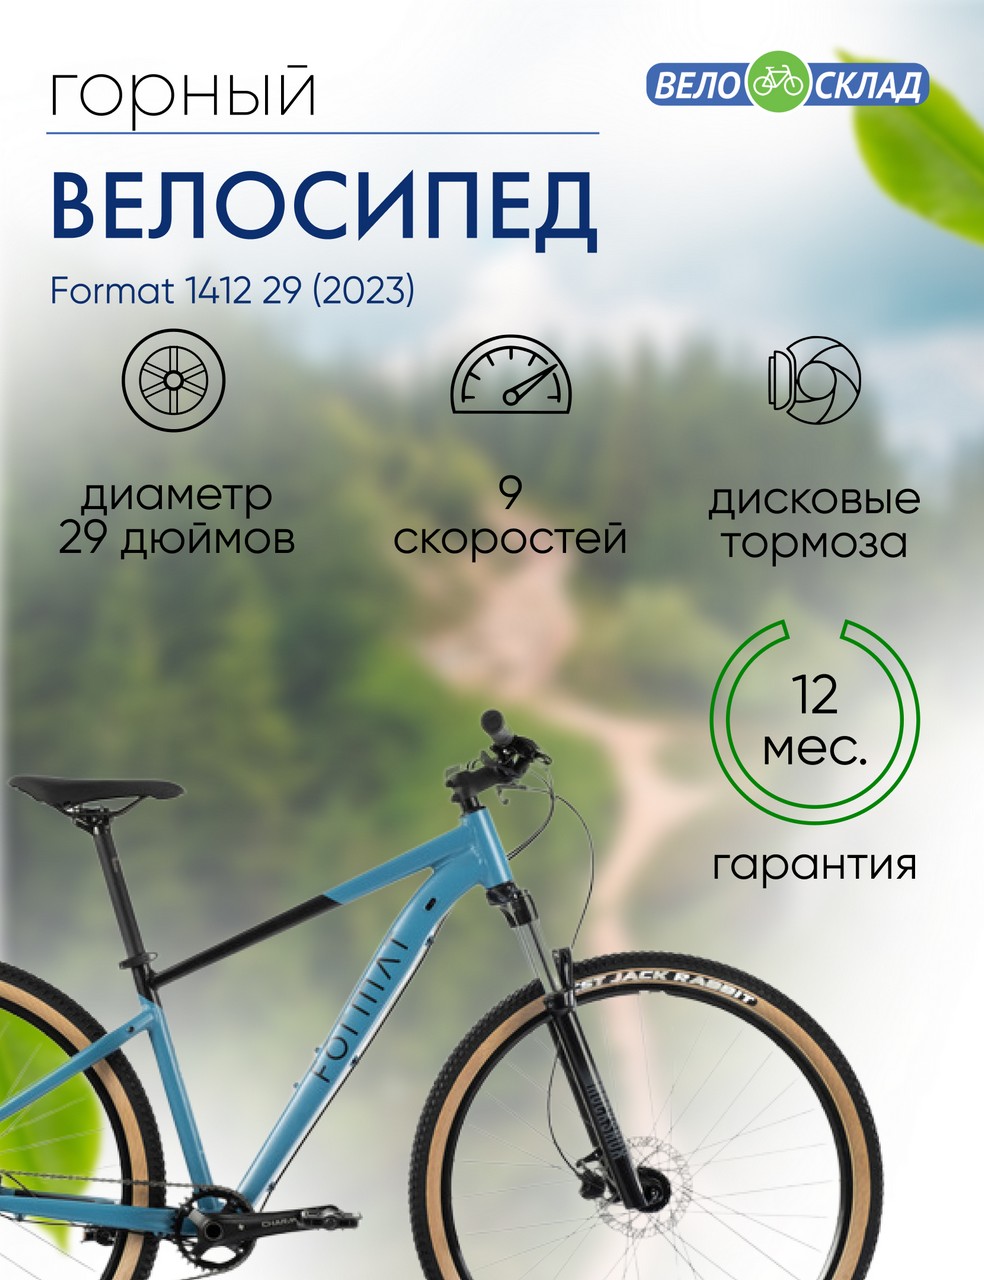 Горный велосипед Format 1412 29, год 2023, цвет Синий-Черный, ростовка 17